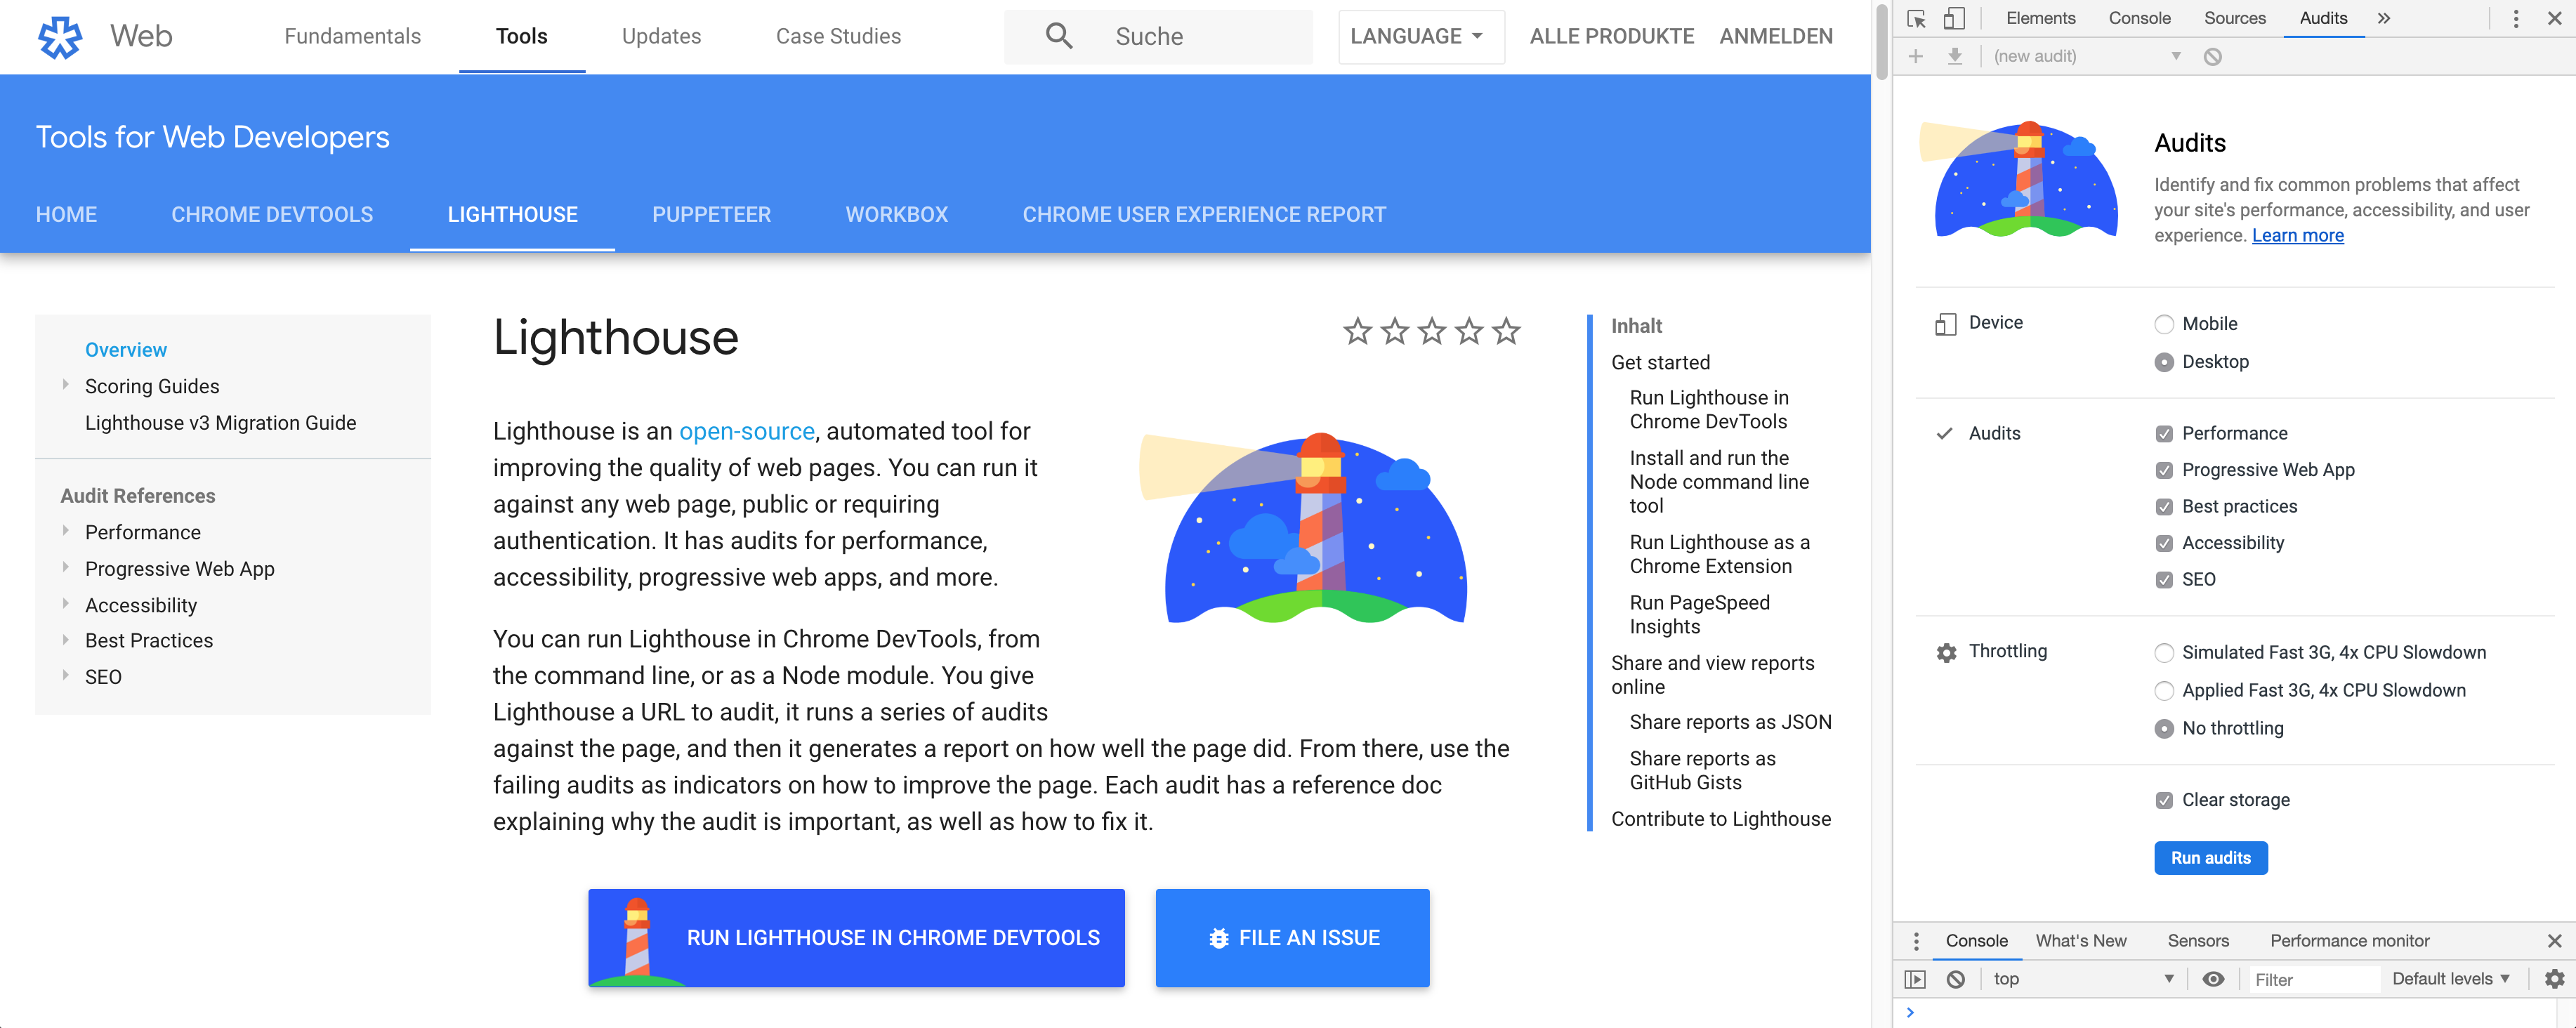 Google Chrome Browser mit geöffneter Developer-Console. Dort ist der Audits Tab ausgewählt, welcher die möglichen Lighthouse Audits anzeigt.